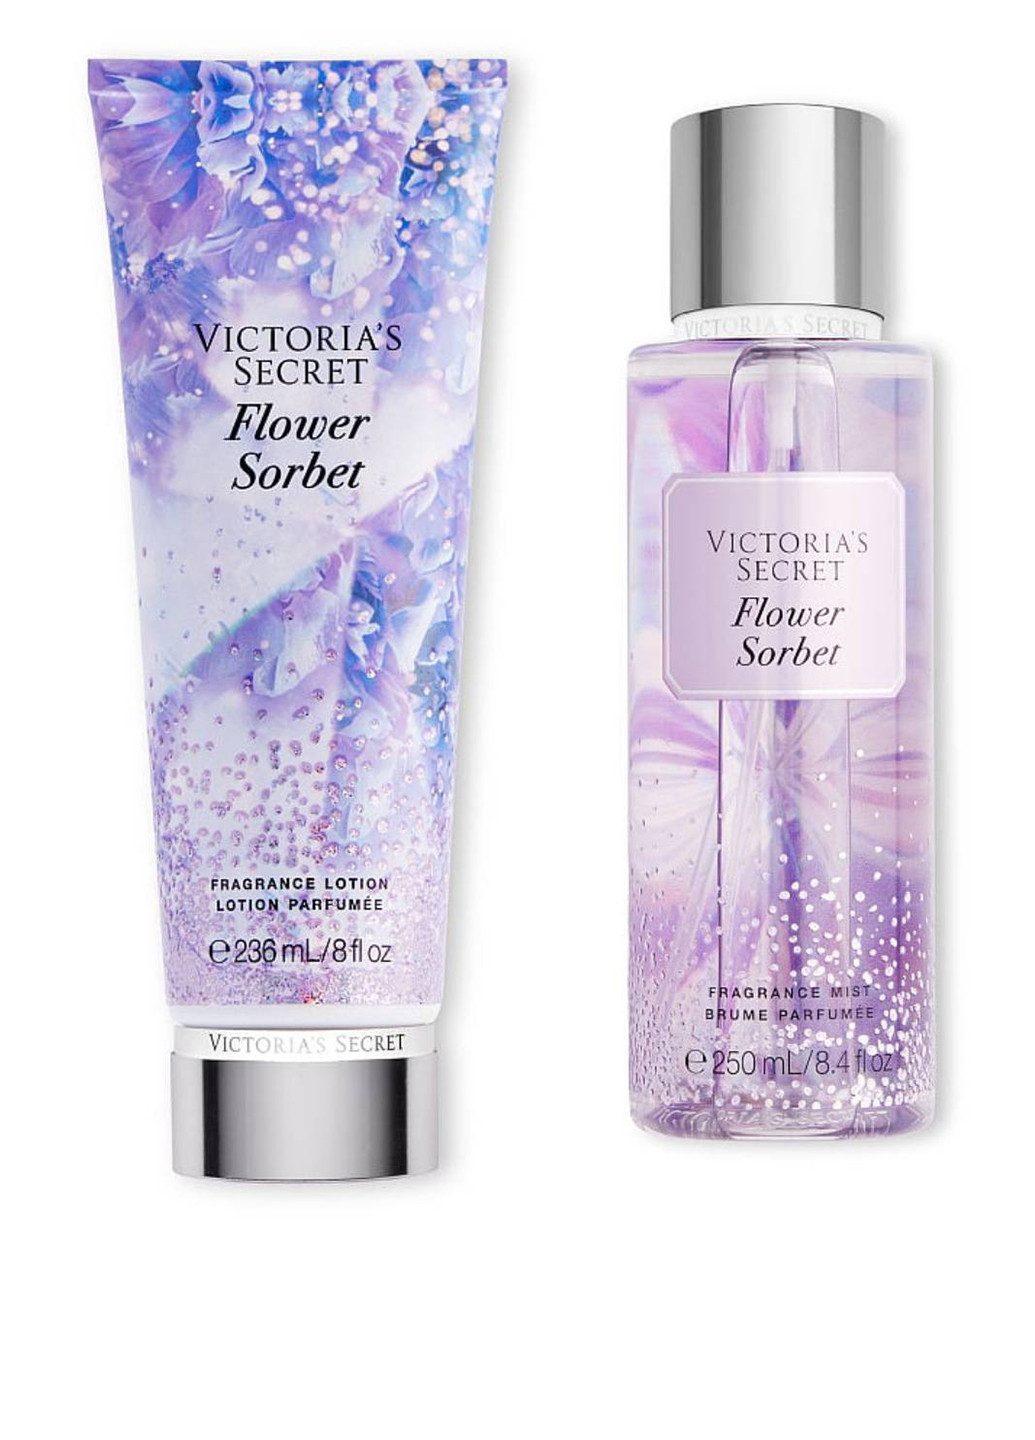 Набор Velvet Petals Radiant (2 пр.) Victoria's Secret